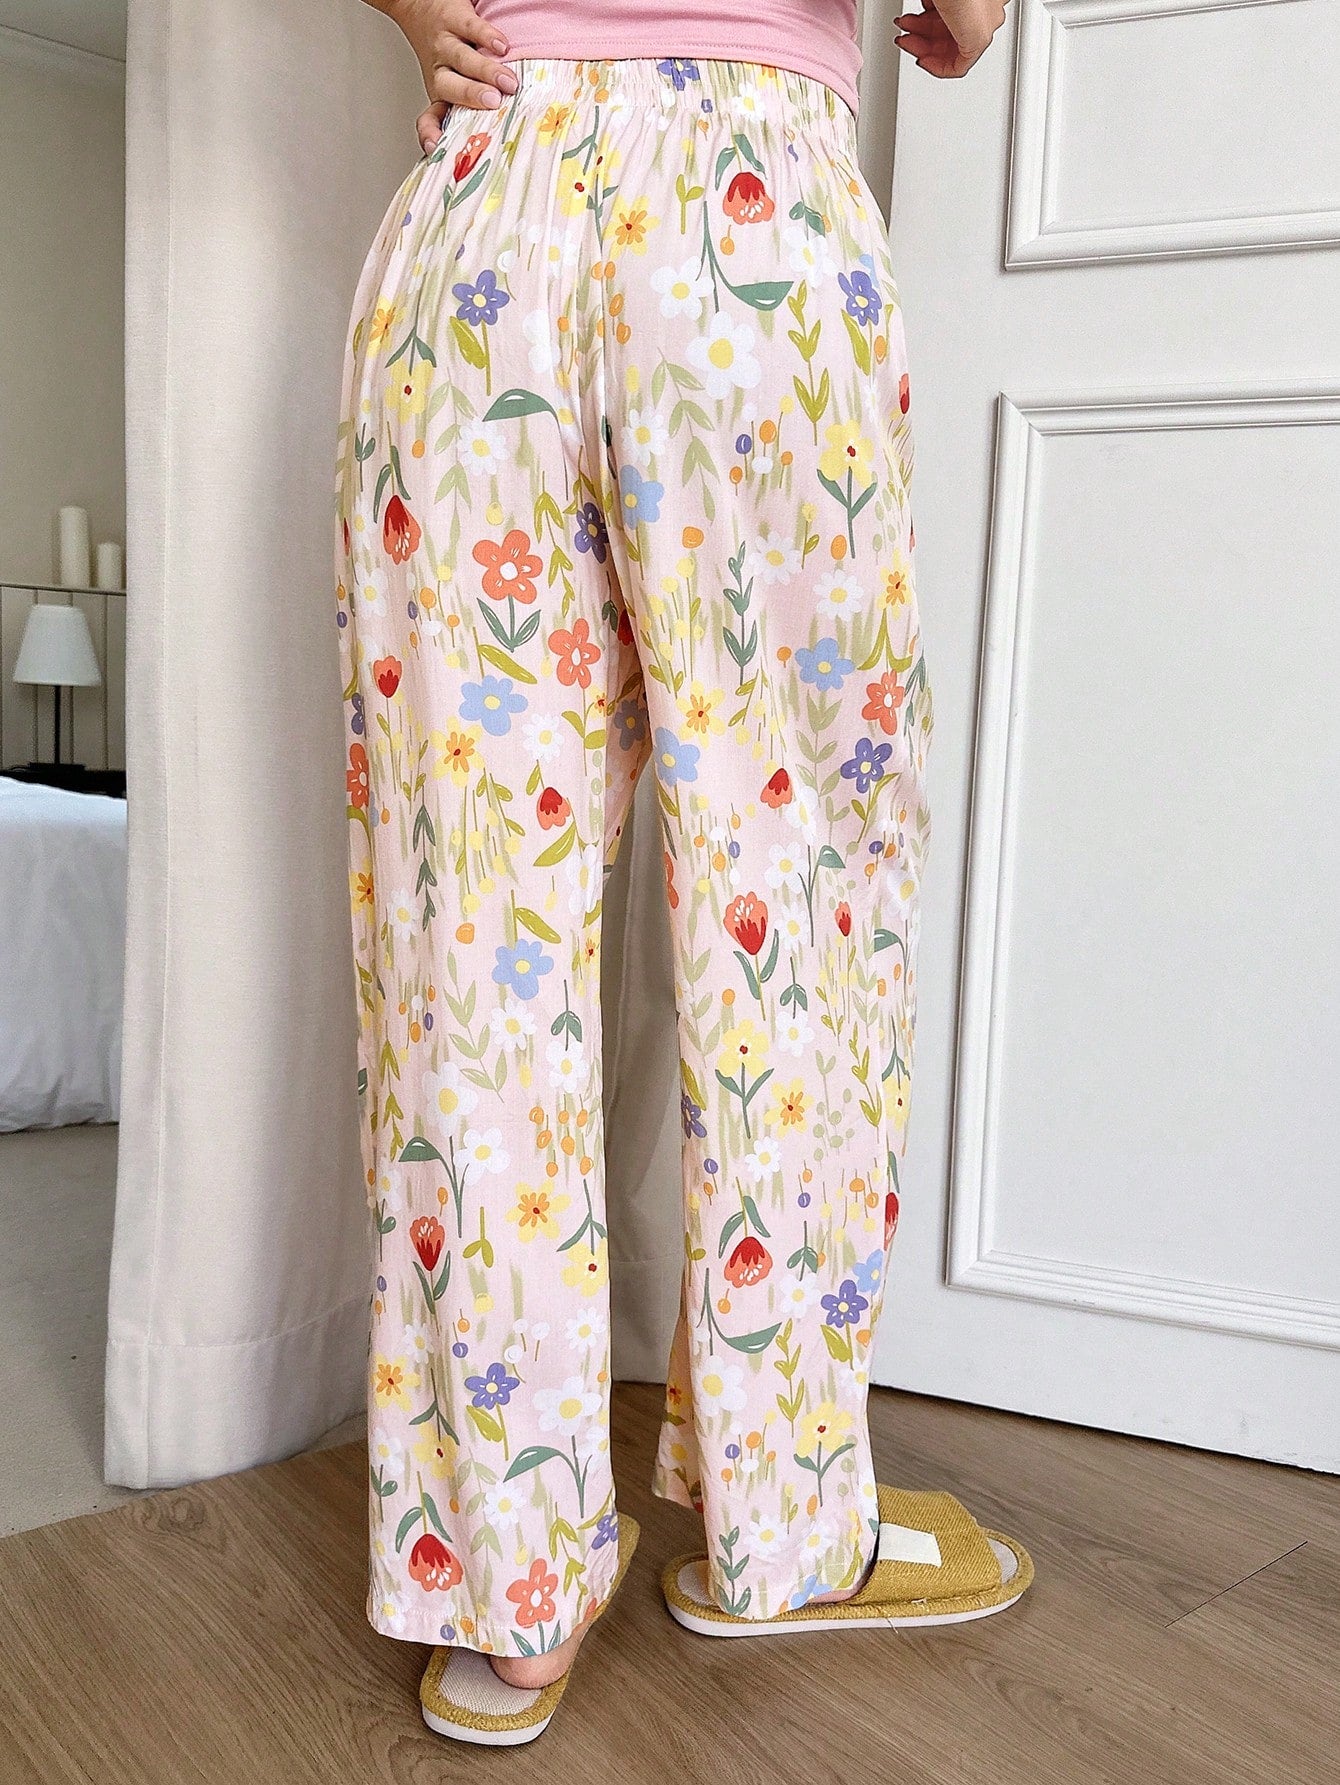 Ladies" Fresh Floral Print Casual Long Pants Sleepwear Bottoms